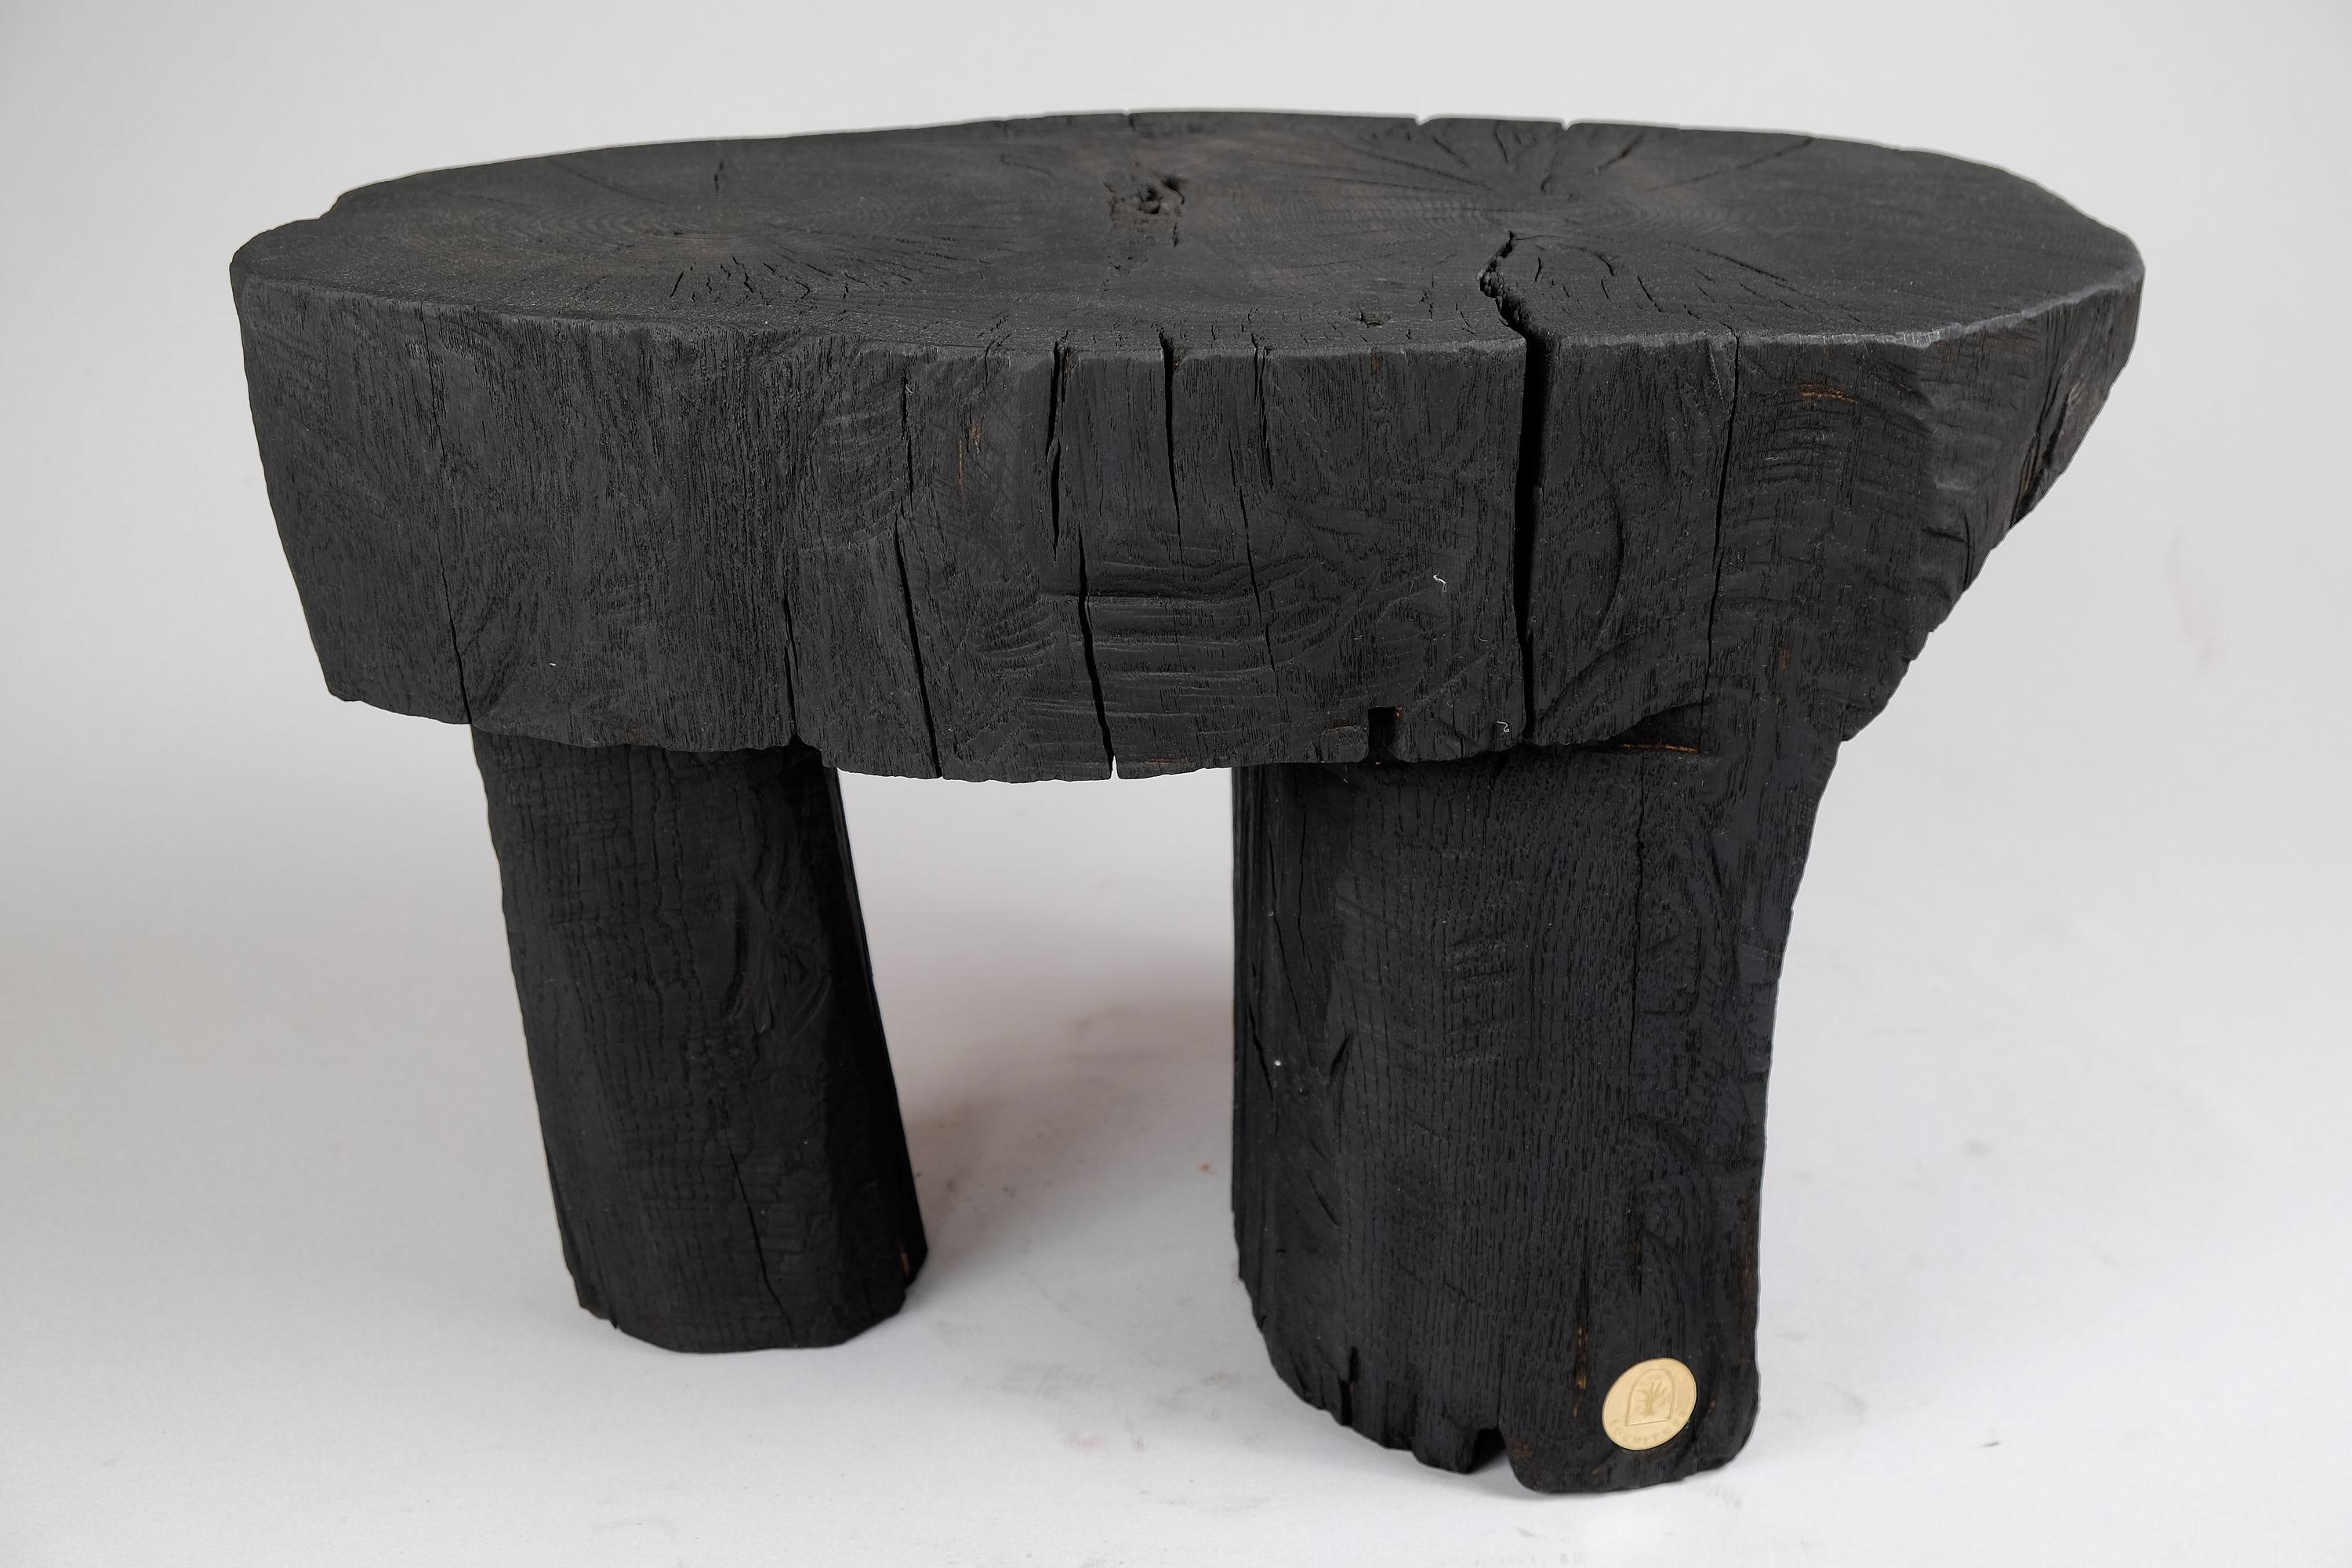 Table/tabouret d'appoint rustique contemporain unique en bois sculpté à la tronçonneuse. Sculpté dans une seule pièce de bois et protégé par des huiles de la plus haute qualité, il est durable pour des générations. Un tel design unique fait à la